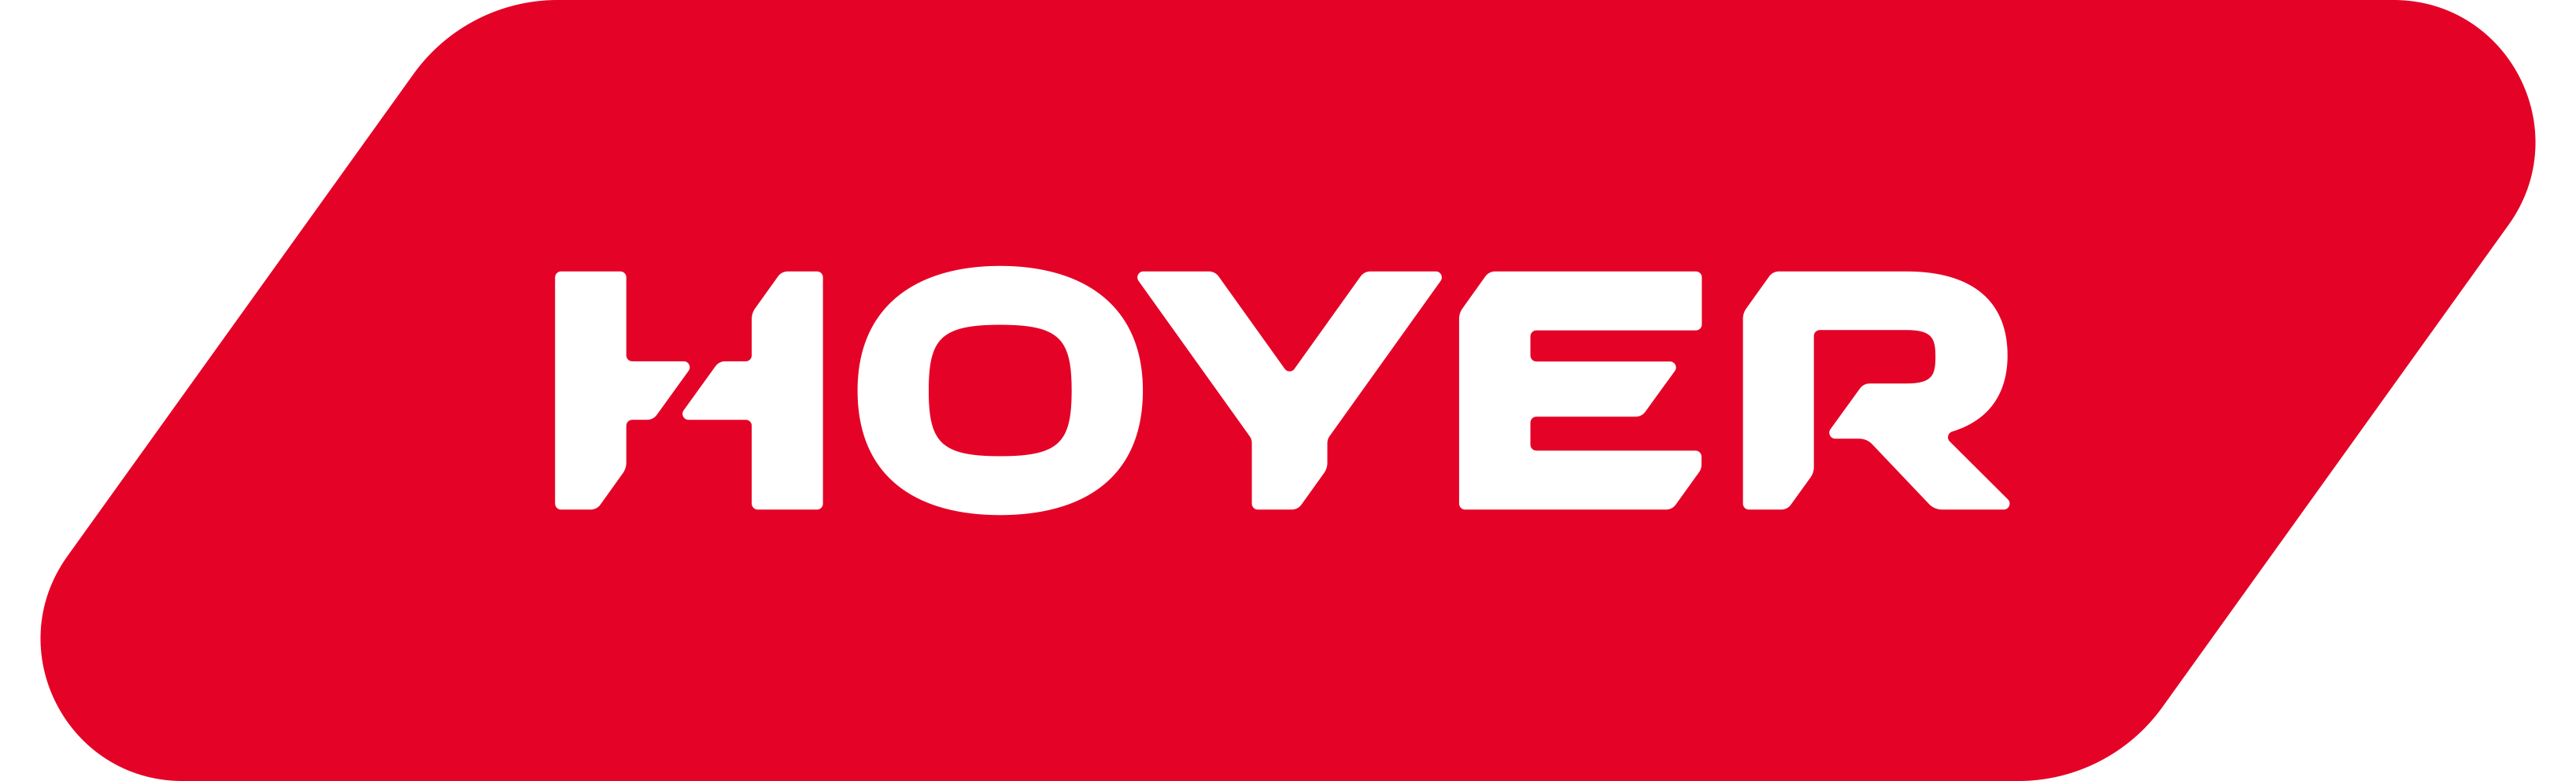 Logo Hoyer 2020 rot